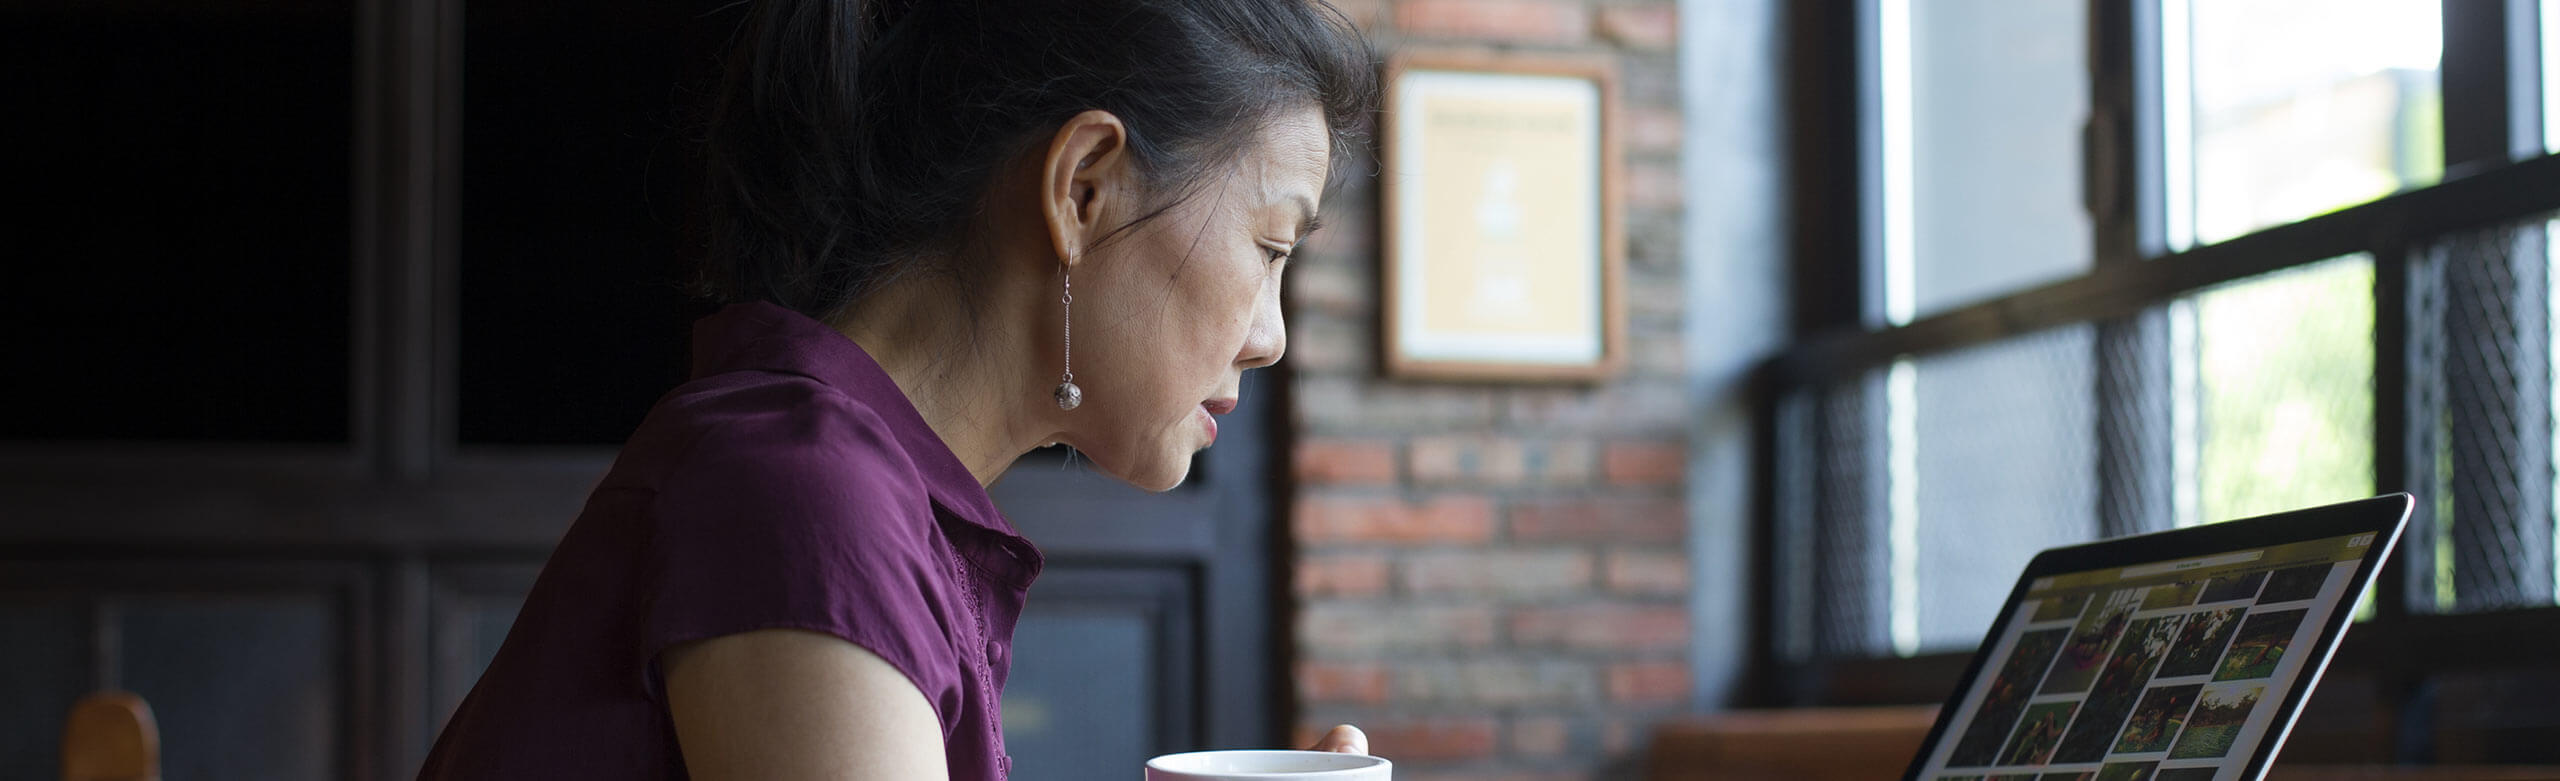 Imagen de una mujer tomando un café mientras trabaja con un portátil.